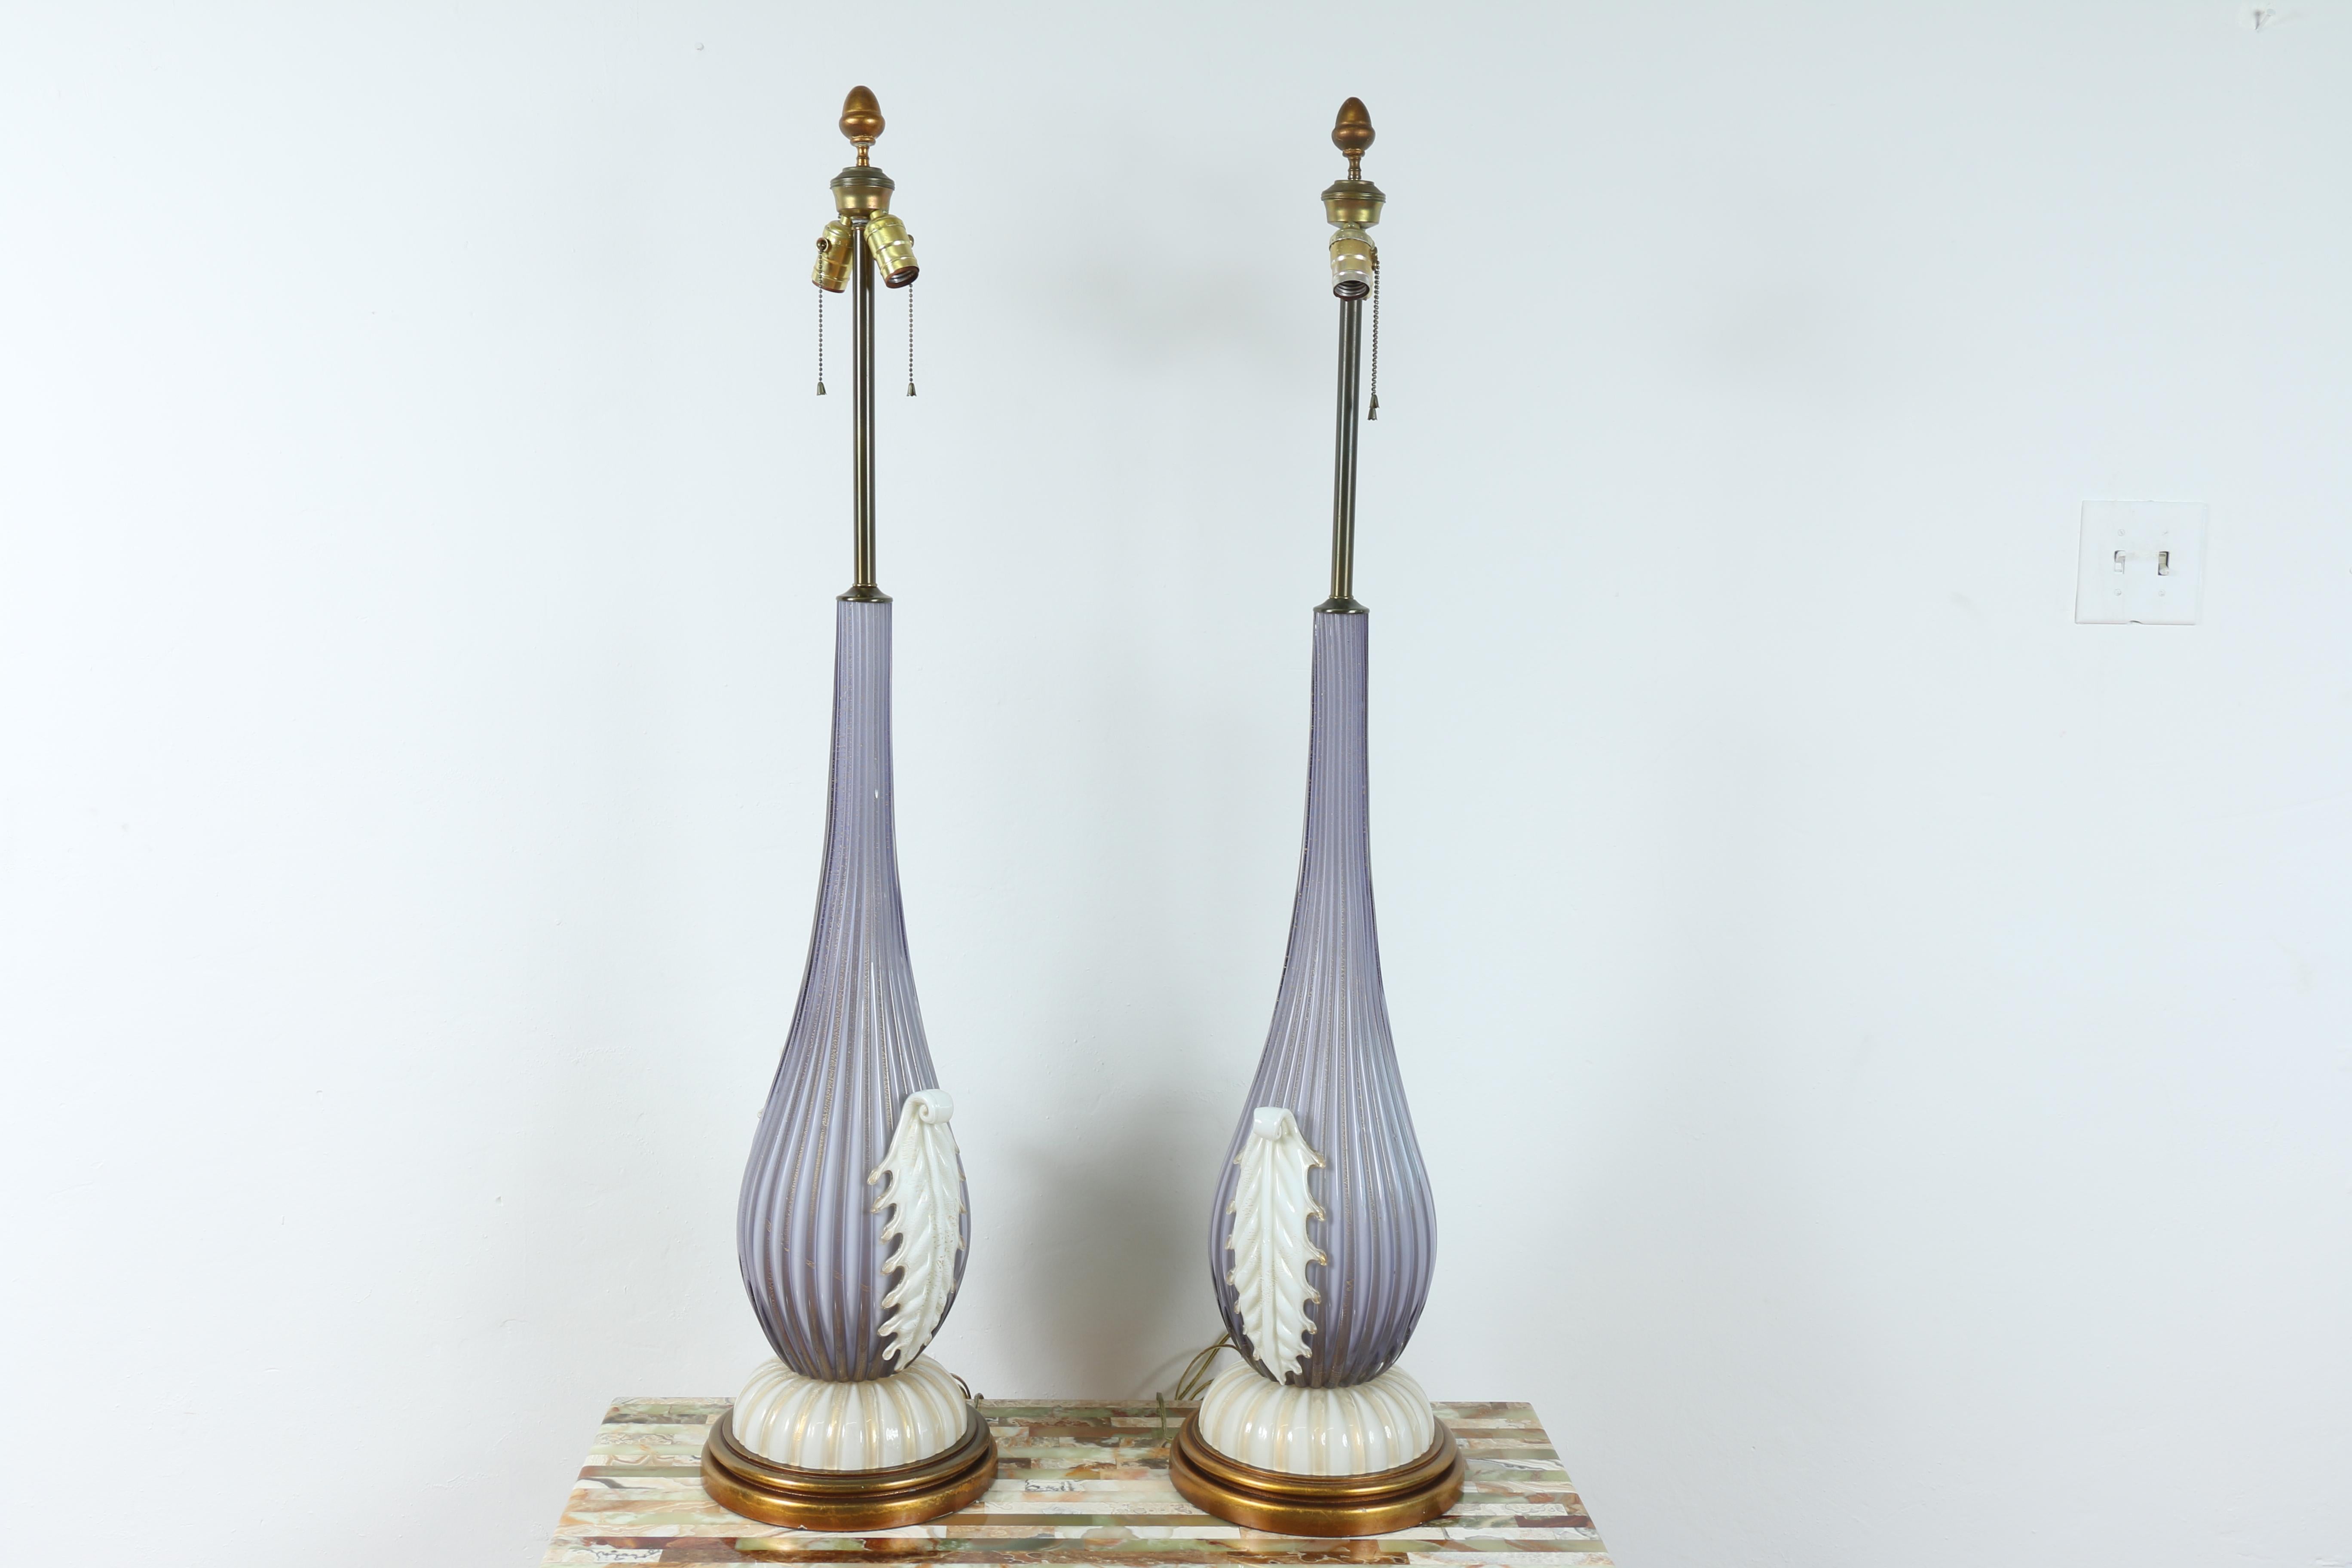 Vintage Paar Murano Glas hohe Tischlampen in ausgezeichnetem Zustand sie auch gut funktionieren.
Auch der Holzsockel ist in ausgezeichnetem Zustand. Keine Chips oder Risse im Glas. Sehr elegantes Lampenpaar.